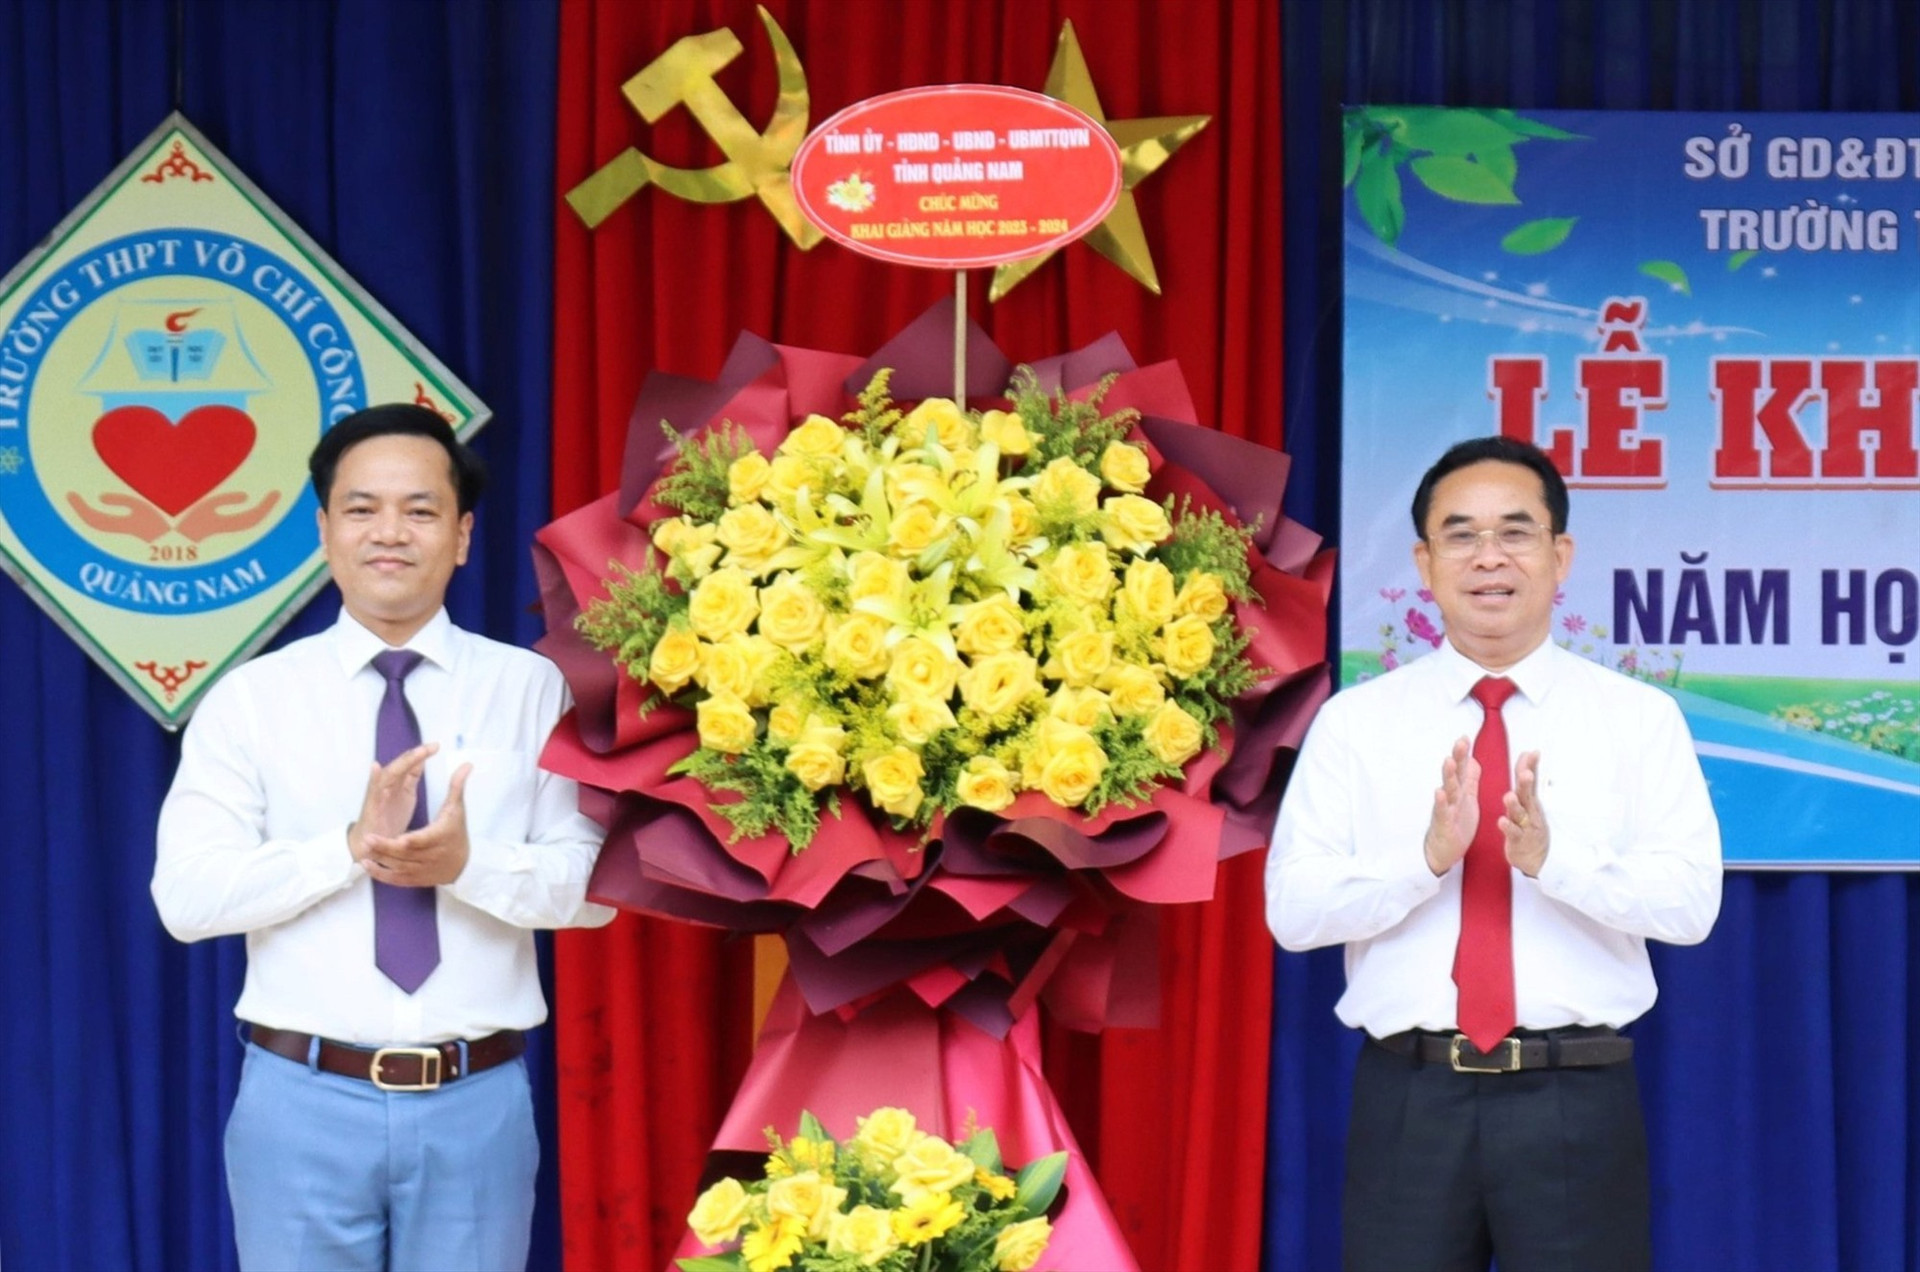 Đại diện lãnh đạo Trường THPT Võ Chí Công đón nhận lẵng hoa chúc mừng từ Phó Chủ tịch UBND tỉnh Trần Anh Tuấn. Ảnh: Đ.N